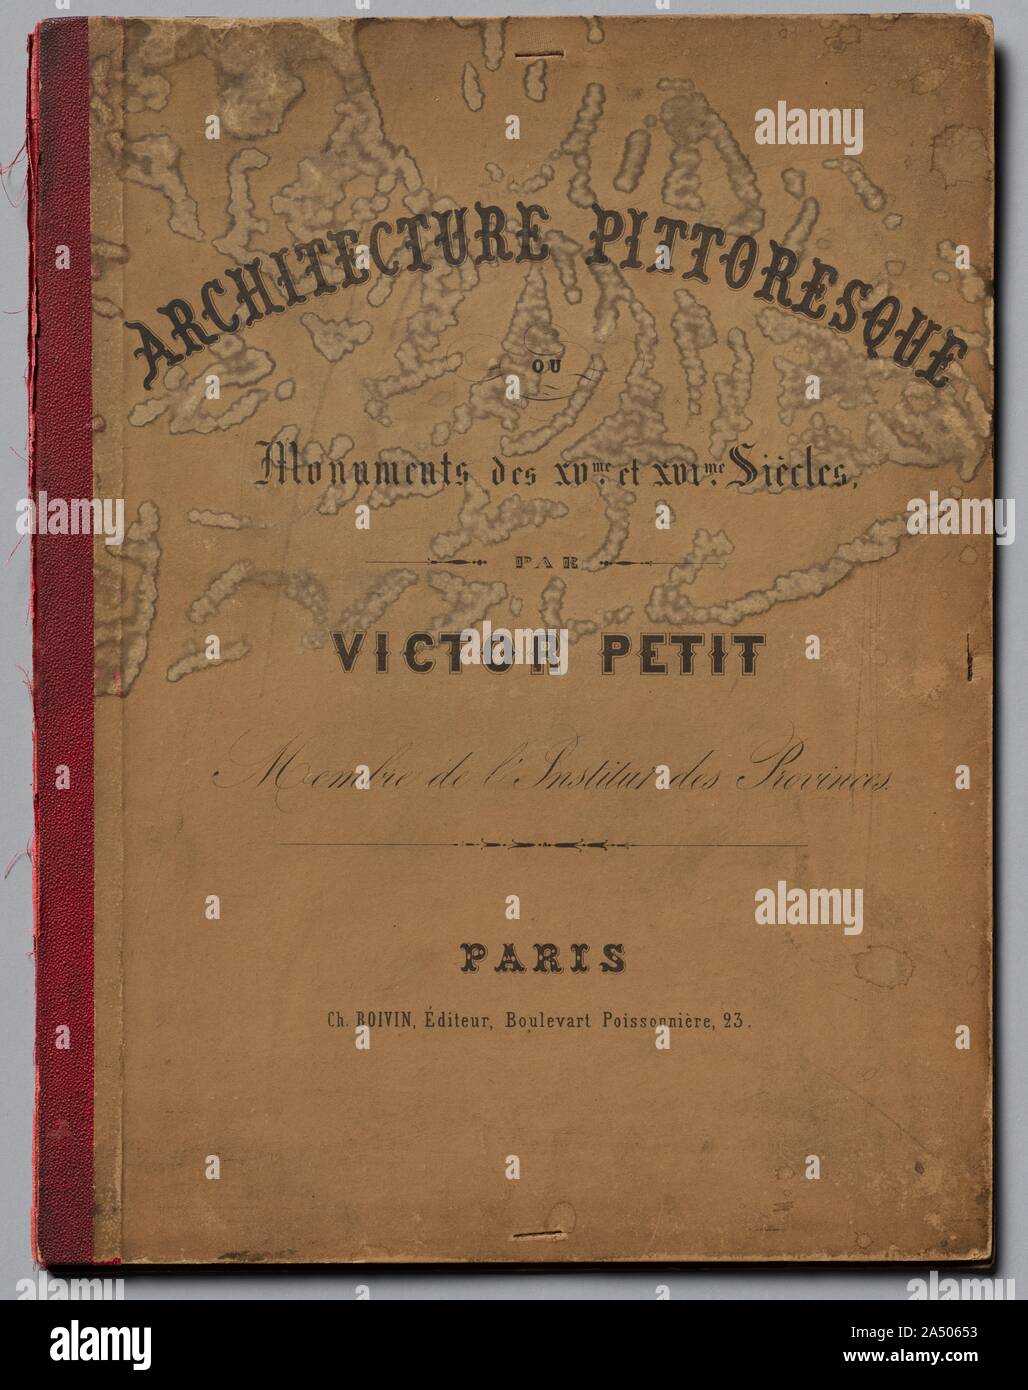 Architettura e pittoresco monumenti ou des XVeme. Et XVIeme. Siecles: Chateaux de France des XV et XVI siecles, pubblicato in 1860. Foto Stock